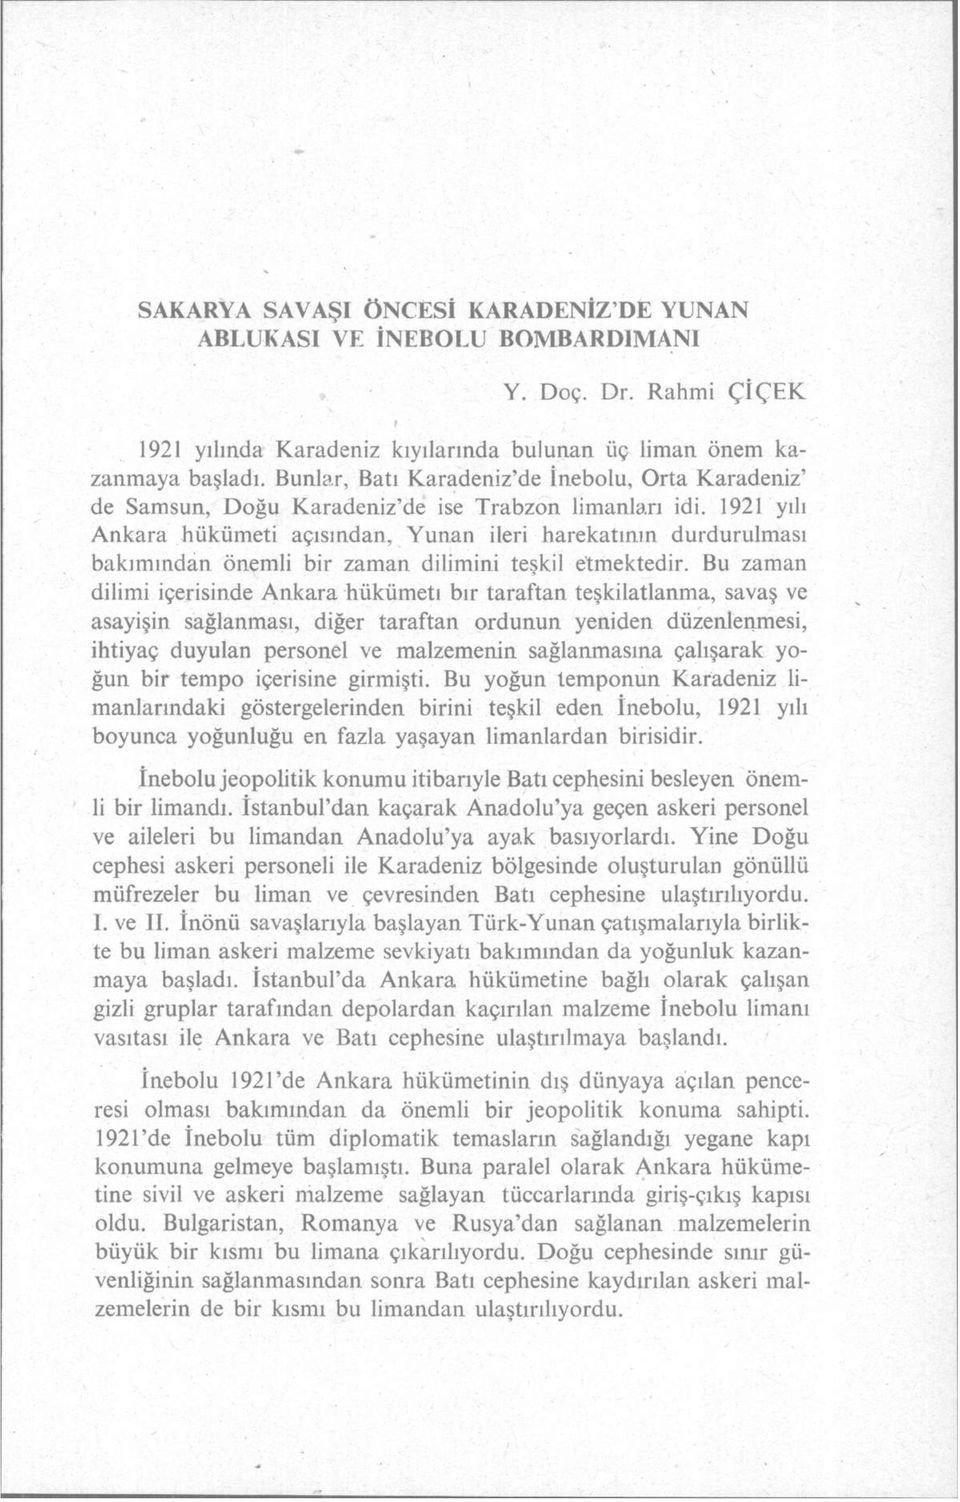 1921 yılı Ankara hükümeti açısından, Yunan ileri harekatının durdurulması bakımından önemli bir zaman dilimini teşkil etmektedir.